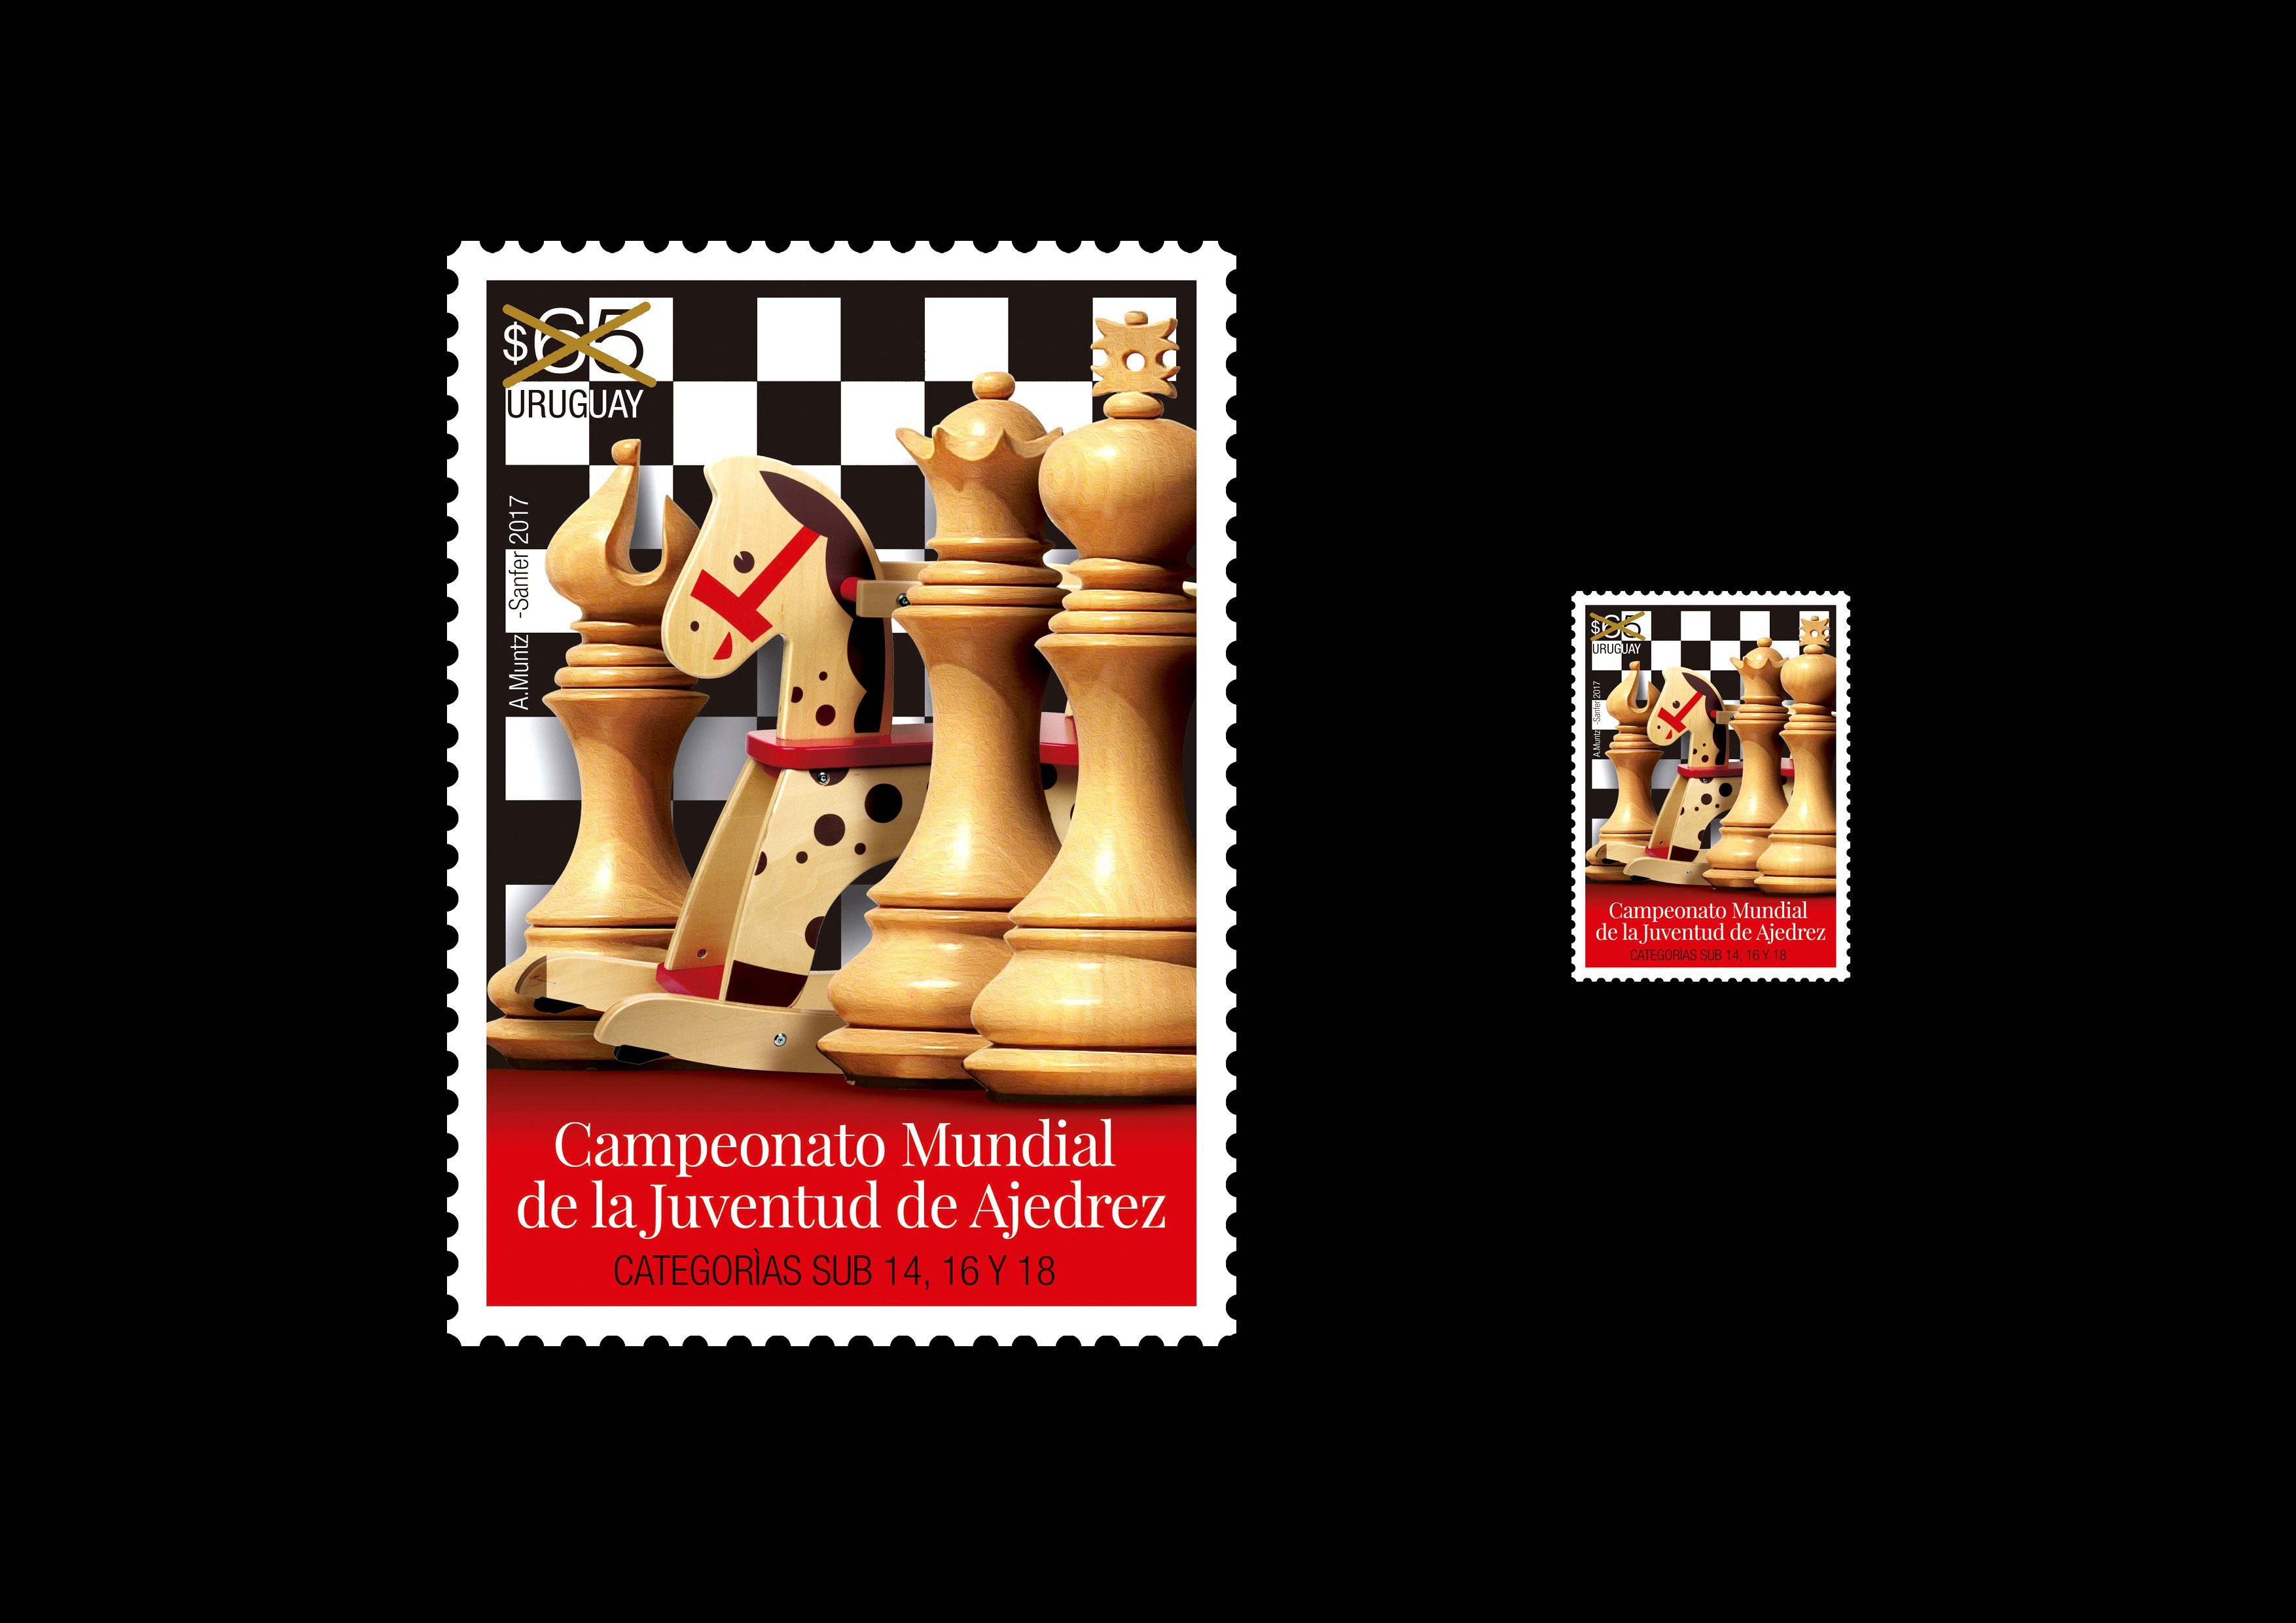 Imagen de cuatro piezas de ajedrez de madera vistas de perfil, una de ellas el caballo en vez de ser la típica figura de ajedrez es un caballo de juguete de madera para hamacarse. Las piezas están dispuestas sobre un fondo de tablero de ajedrez.